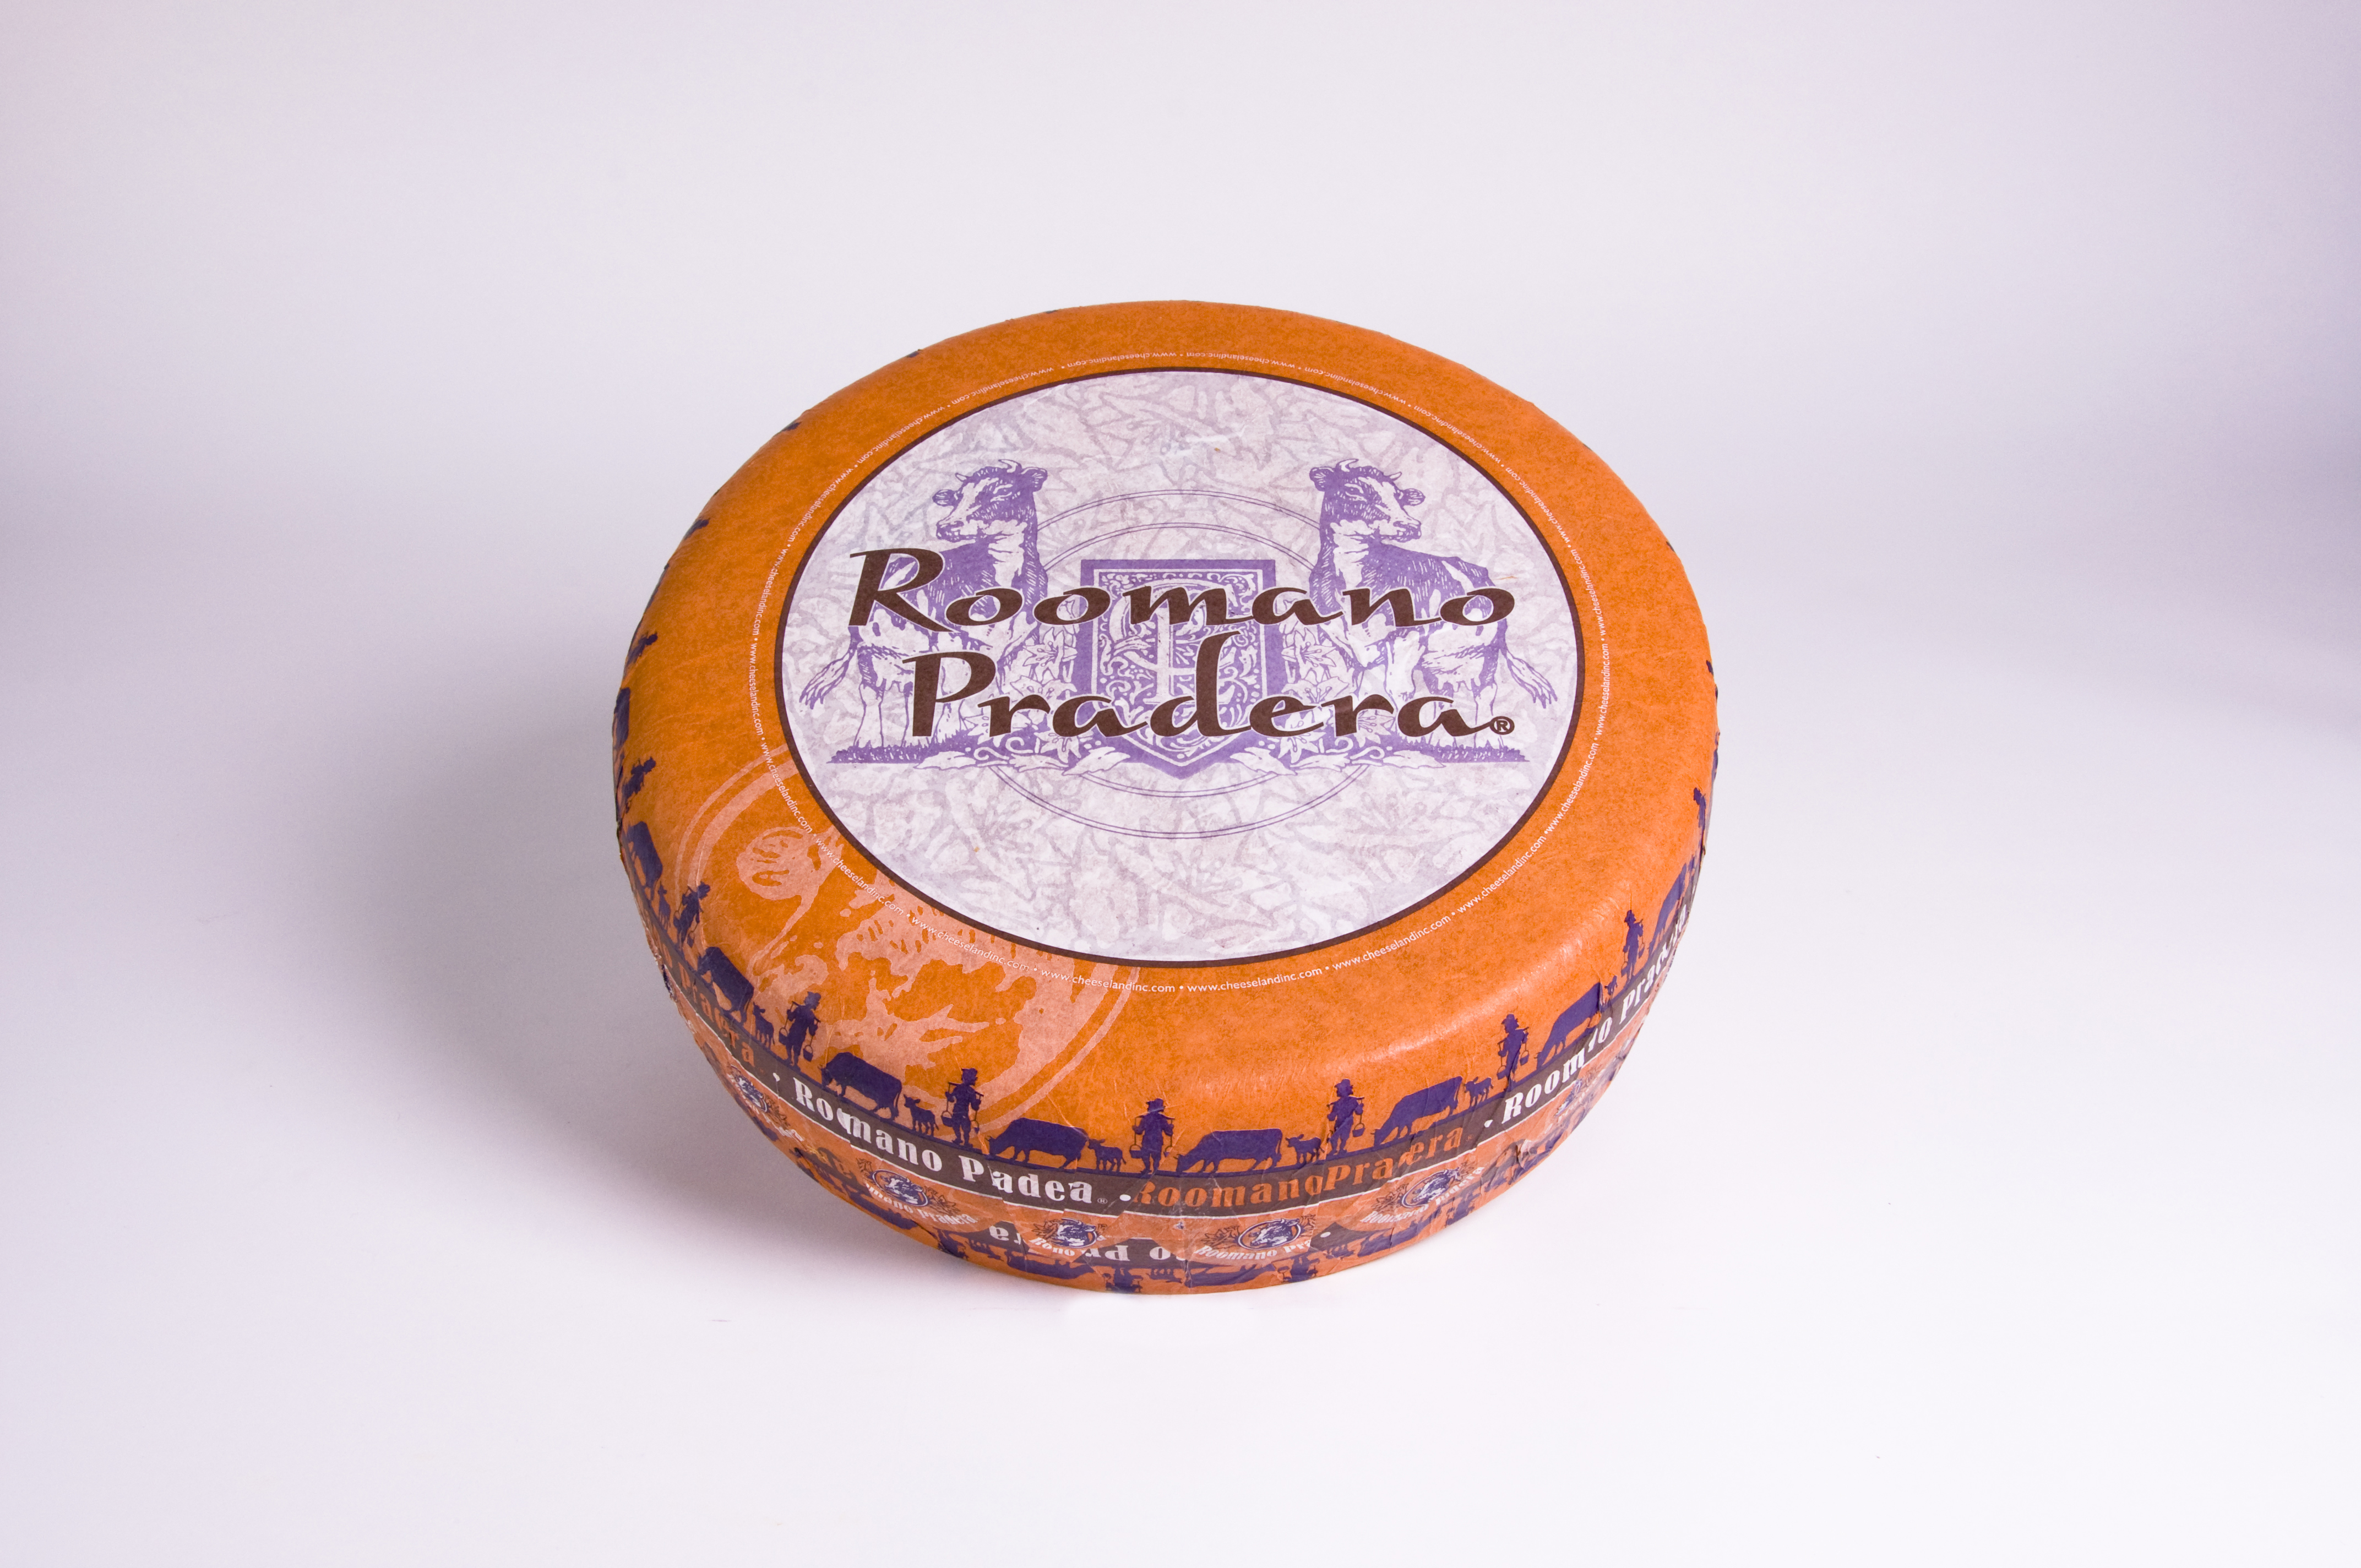 ჩიზლენდი-ყველი პარმეზანის ტიპის რომანო პრადერა 45%-იანი,დაძველება 3-5წელი, 100გრ.